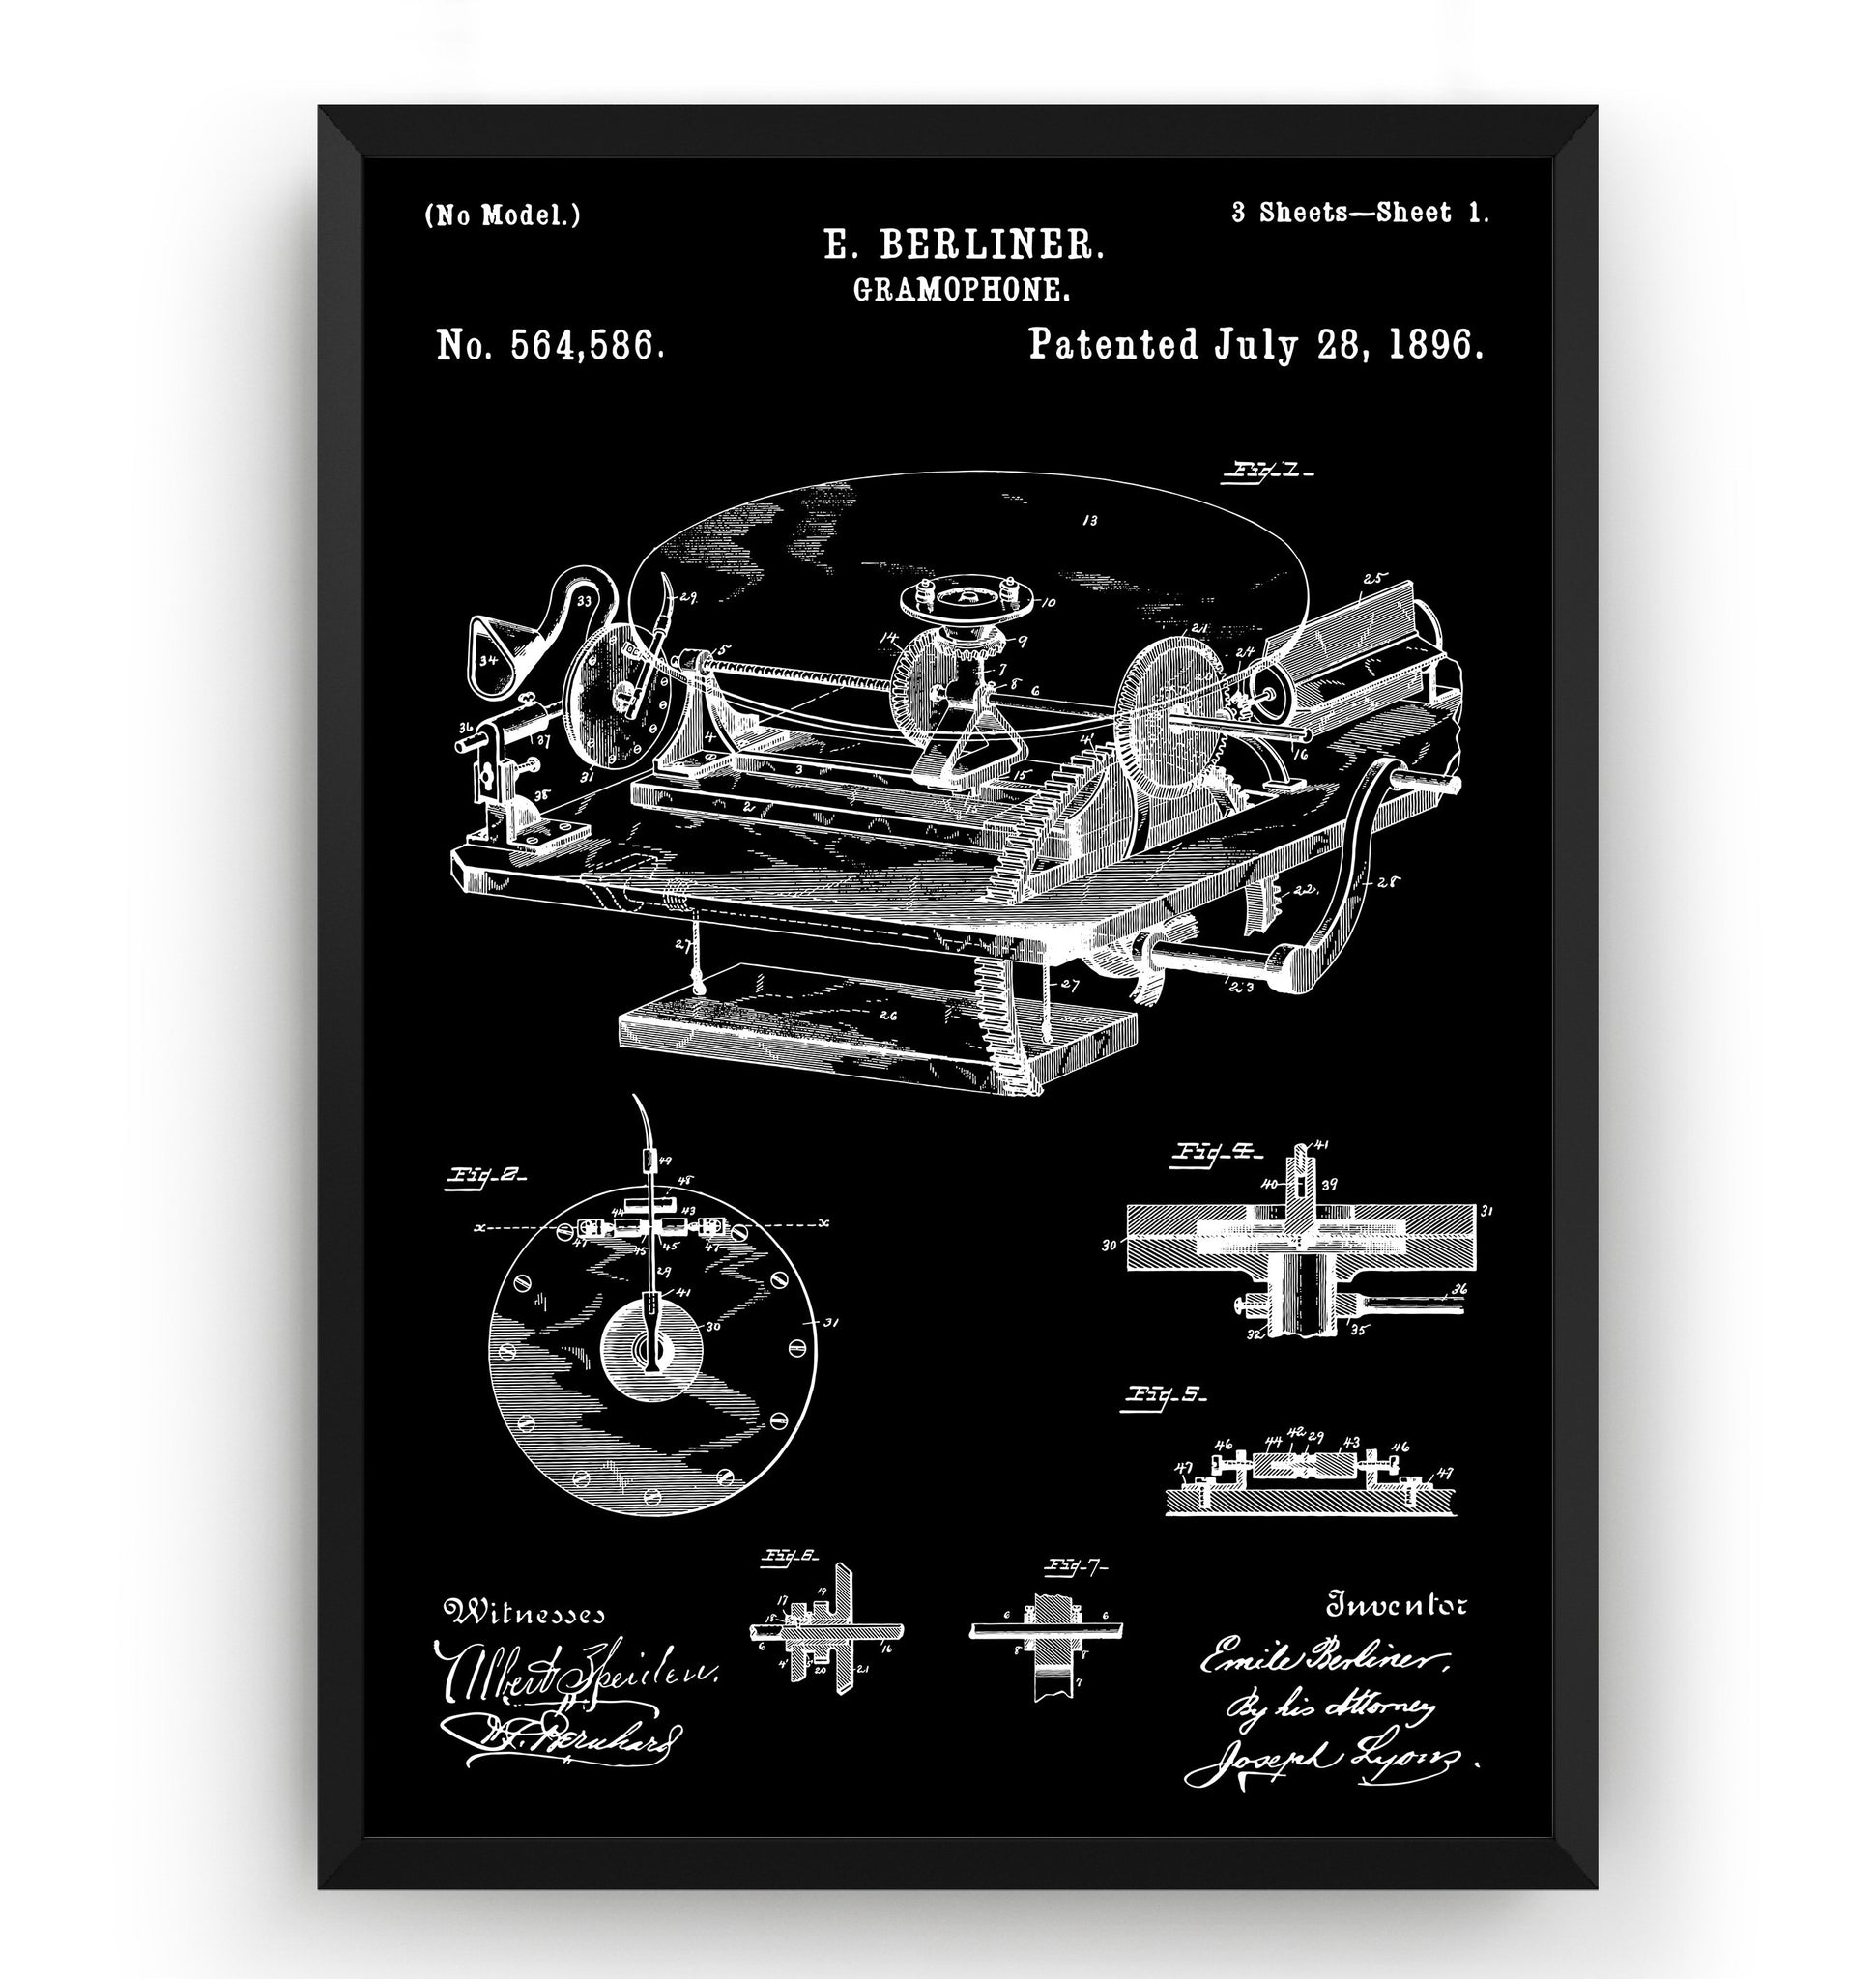 Gramophone 1896 Patent Print - Magic Posters